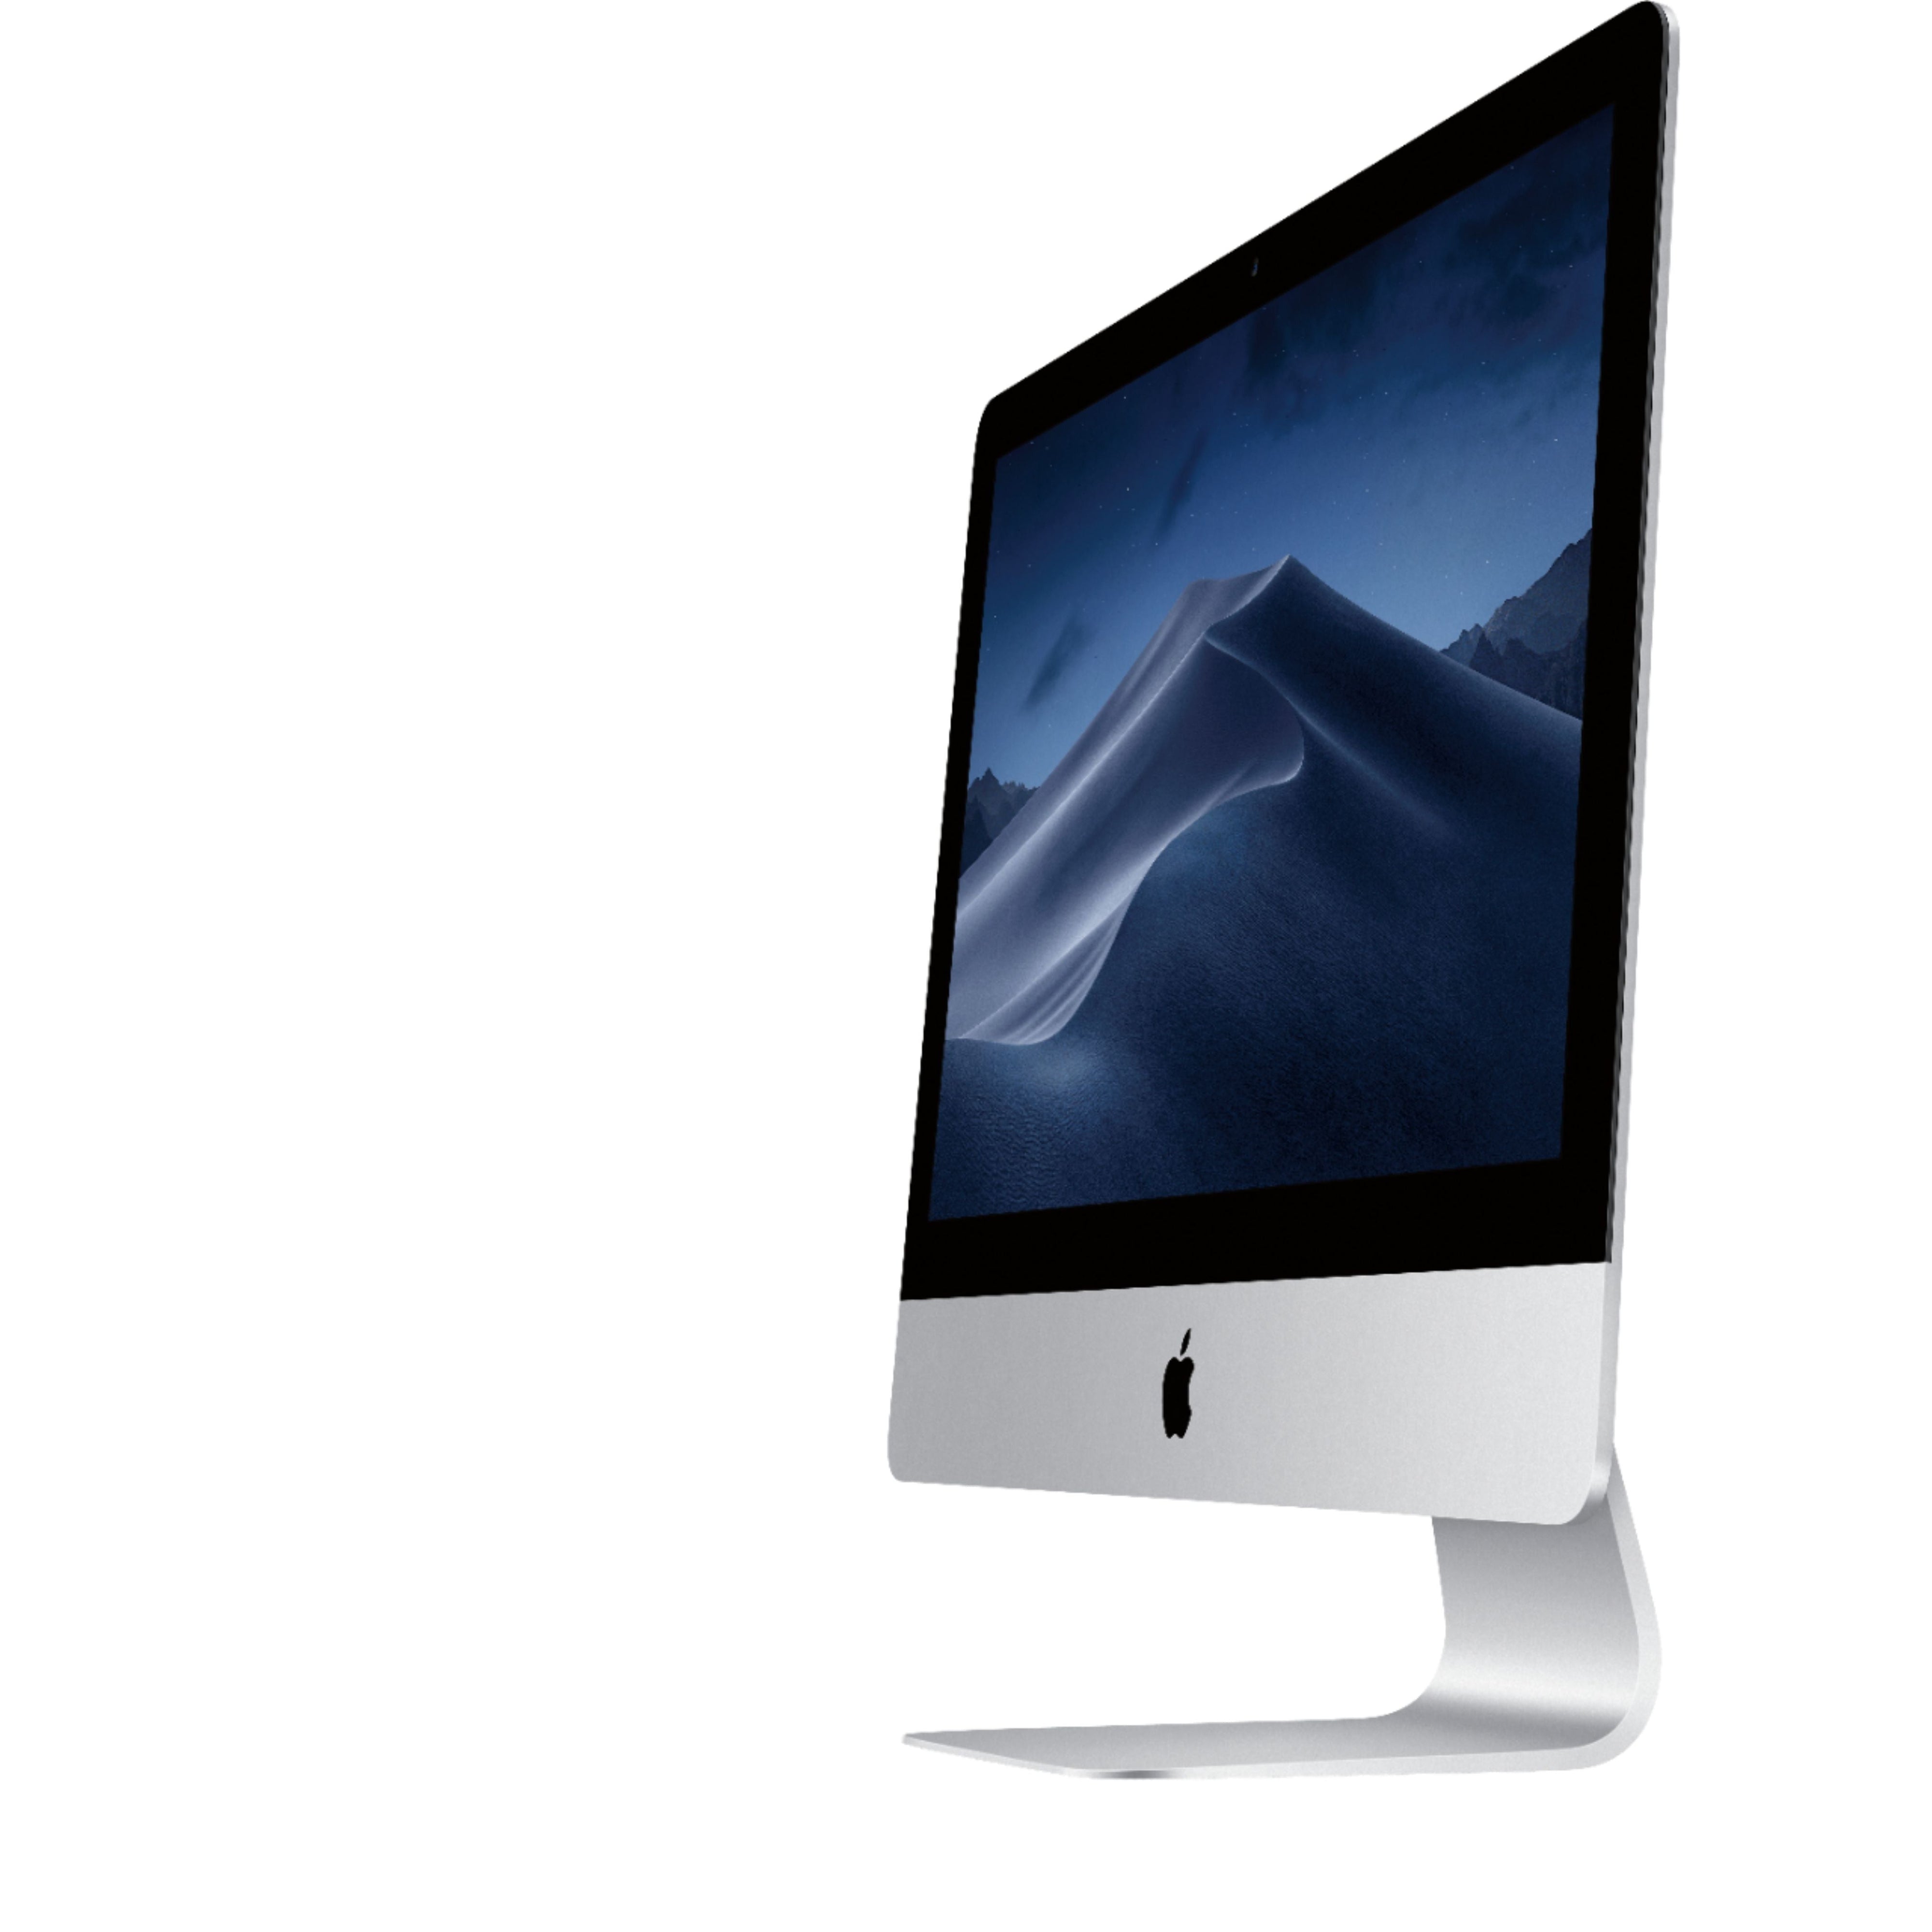 Apple iMac 21.5'' MMQA2LL/A (2017), Intel Core i5 8GB RAM 256GB SSD - Silver - Refurbished Excellent